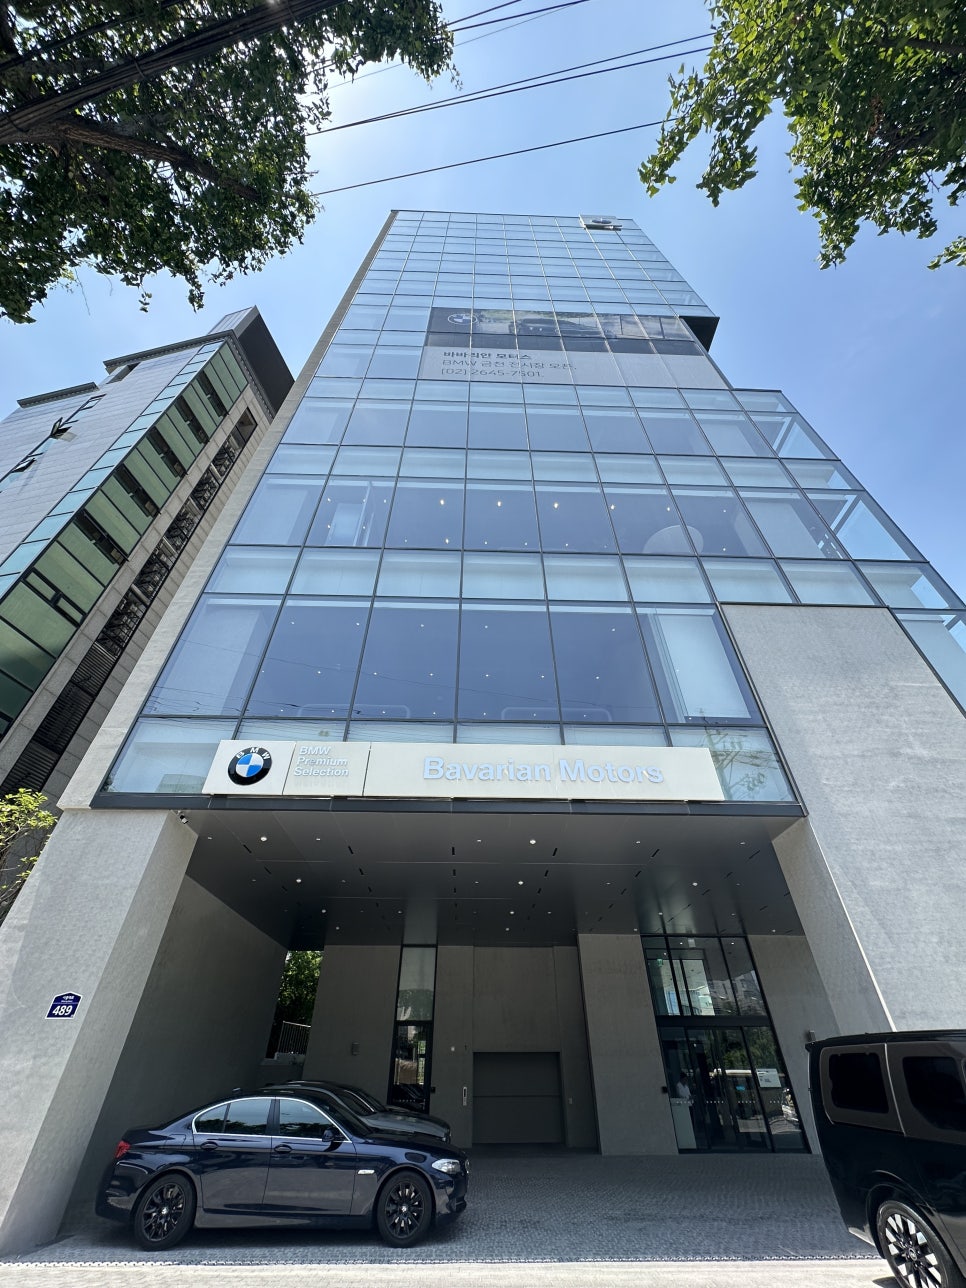 서울 BMW 바바리안모터스 금천전시장 신규오픈 광명에서도 가깝네? i5 / 5시리즈 프로모션